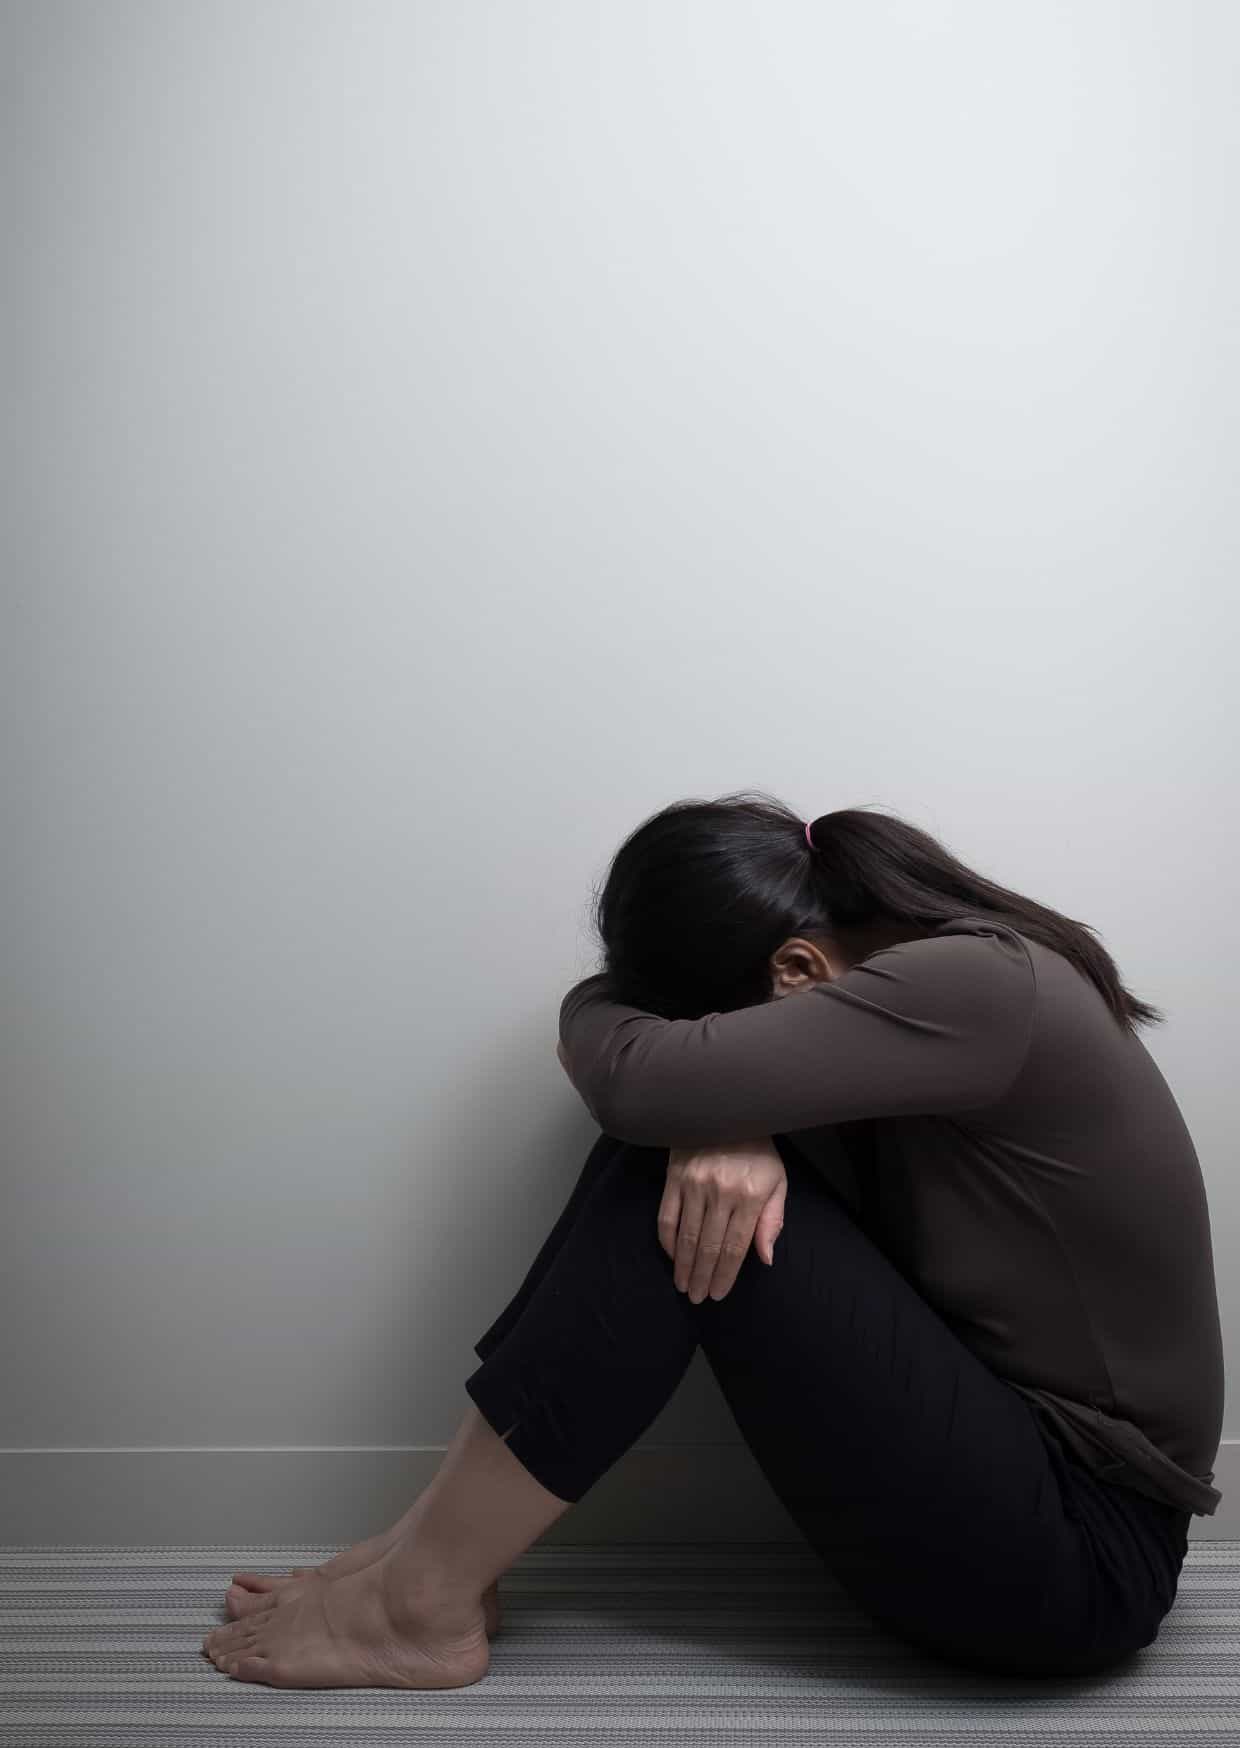 Eine Frau sitzt zusammengesunken auf dem Boden mit dem Rücken zur Wand und dem Kopf auf die Knie gelegt, was Traurigkeit und Niedergeschlagenheit ausdrückt.